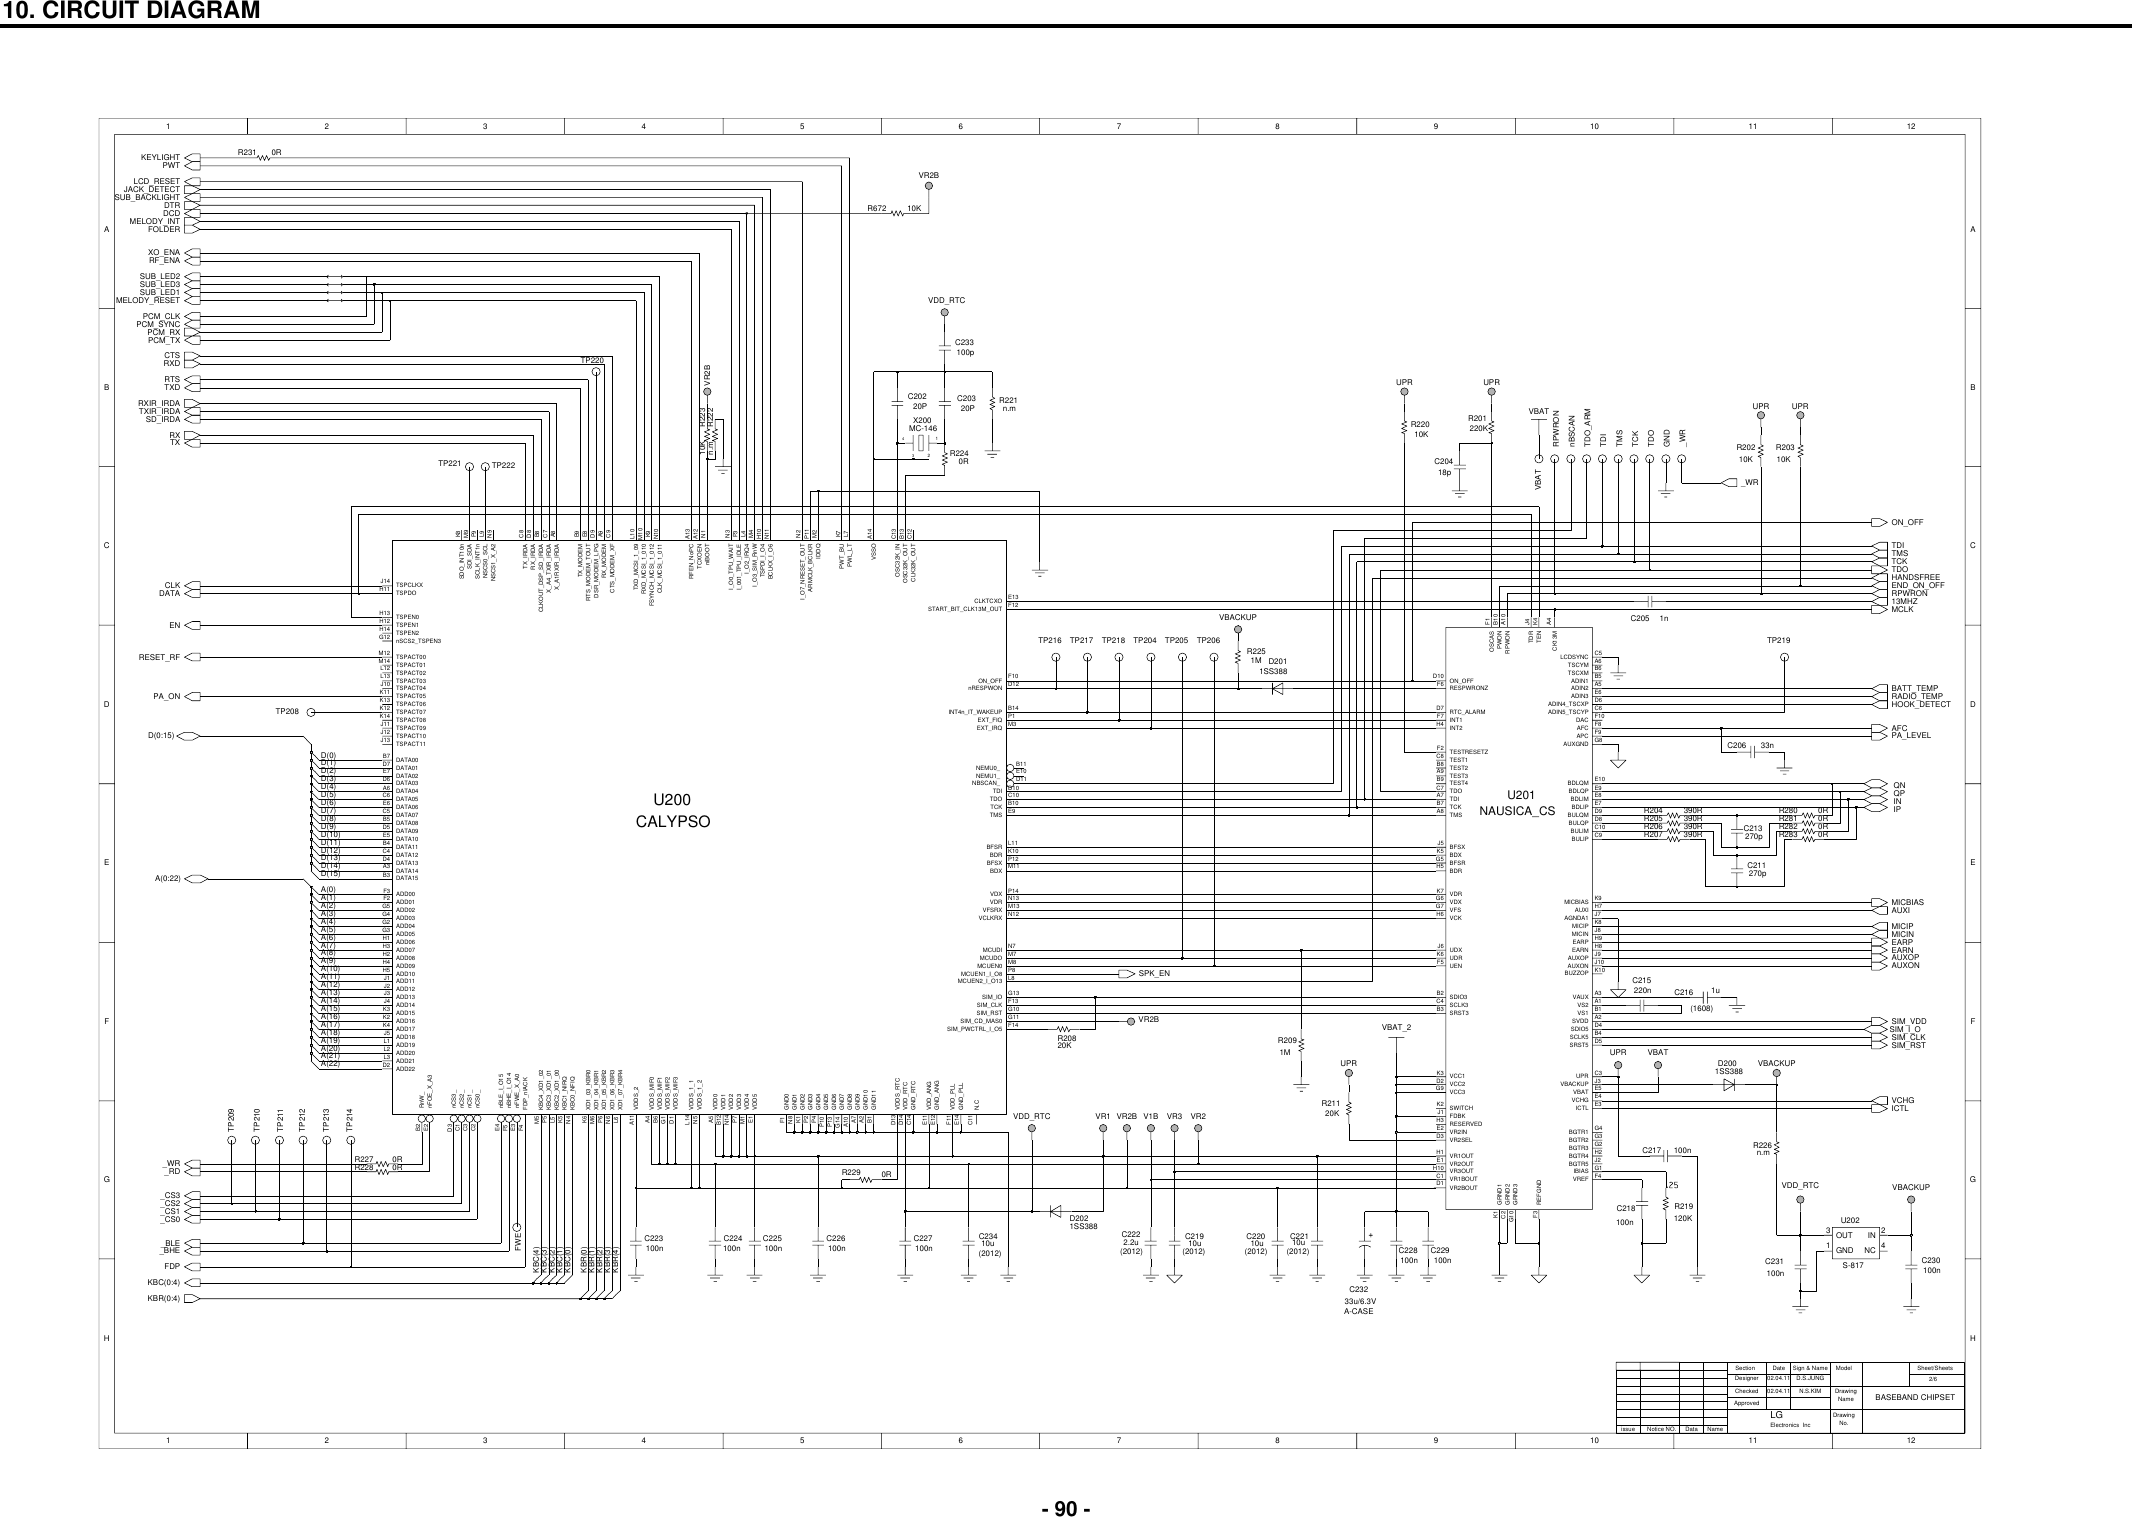 Page 2 of 9 - LG G7020 - Schematics. Www.s-manuals.com. Schematics